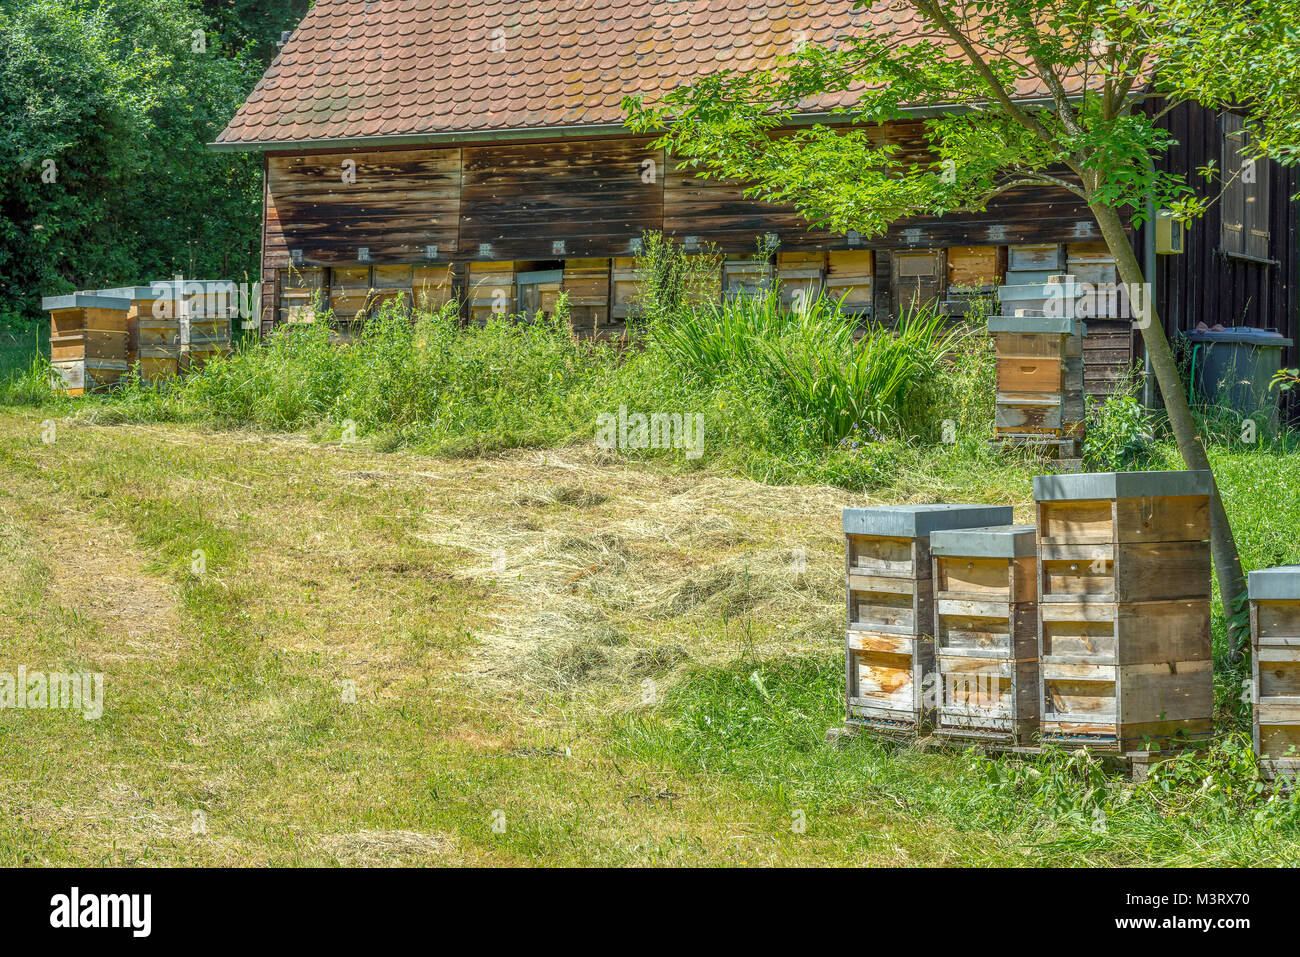 Beeyard avec beaucoup de ruchers à l'heure d'été Banque D'Images